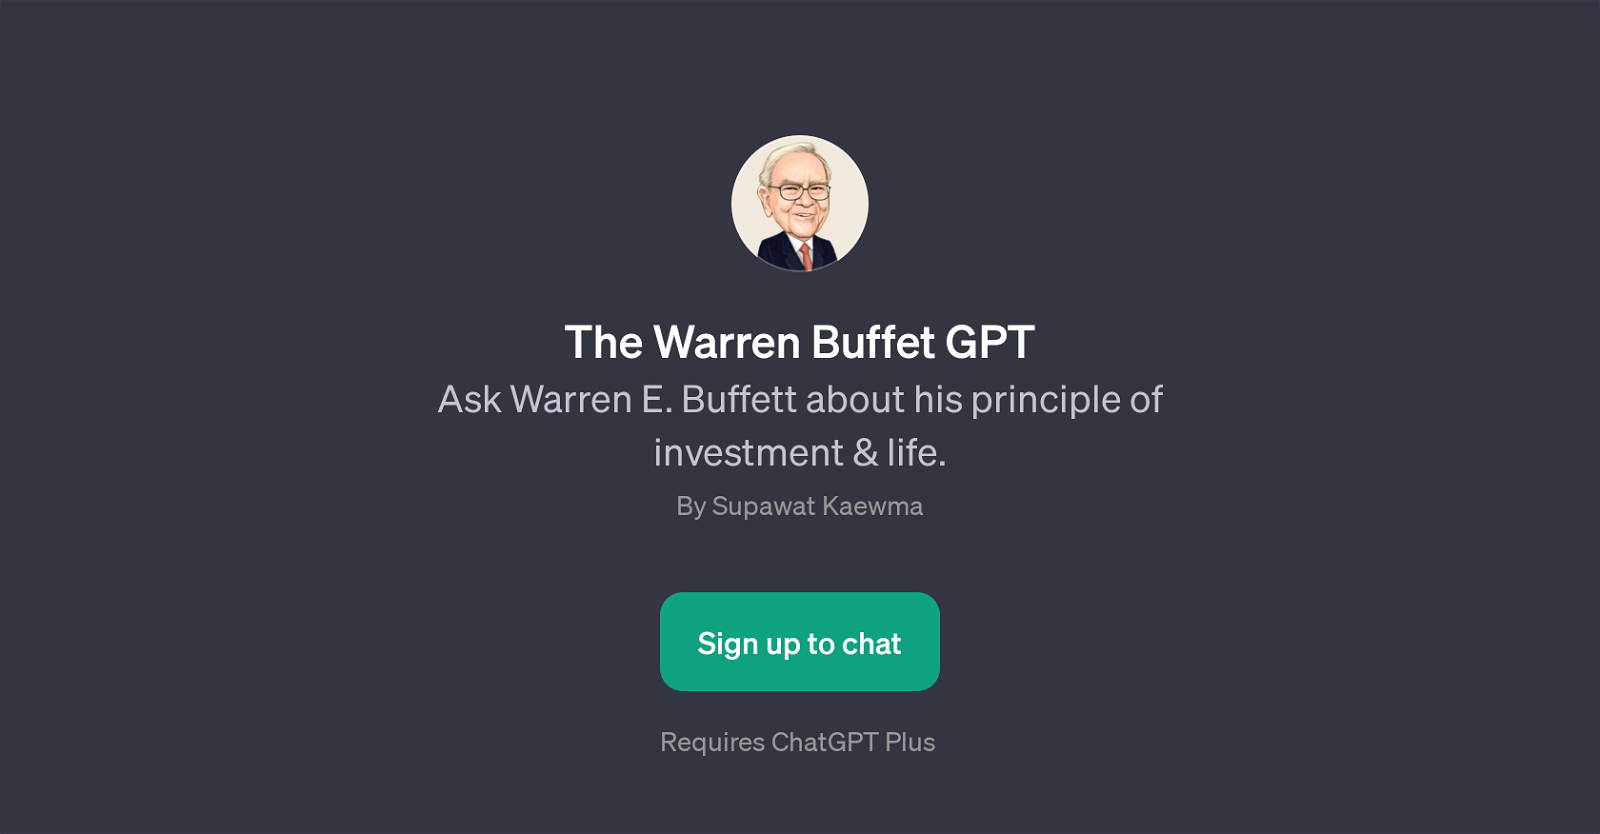 The Warren Buffet GPT website